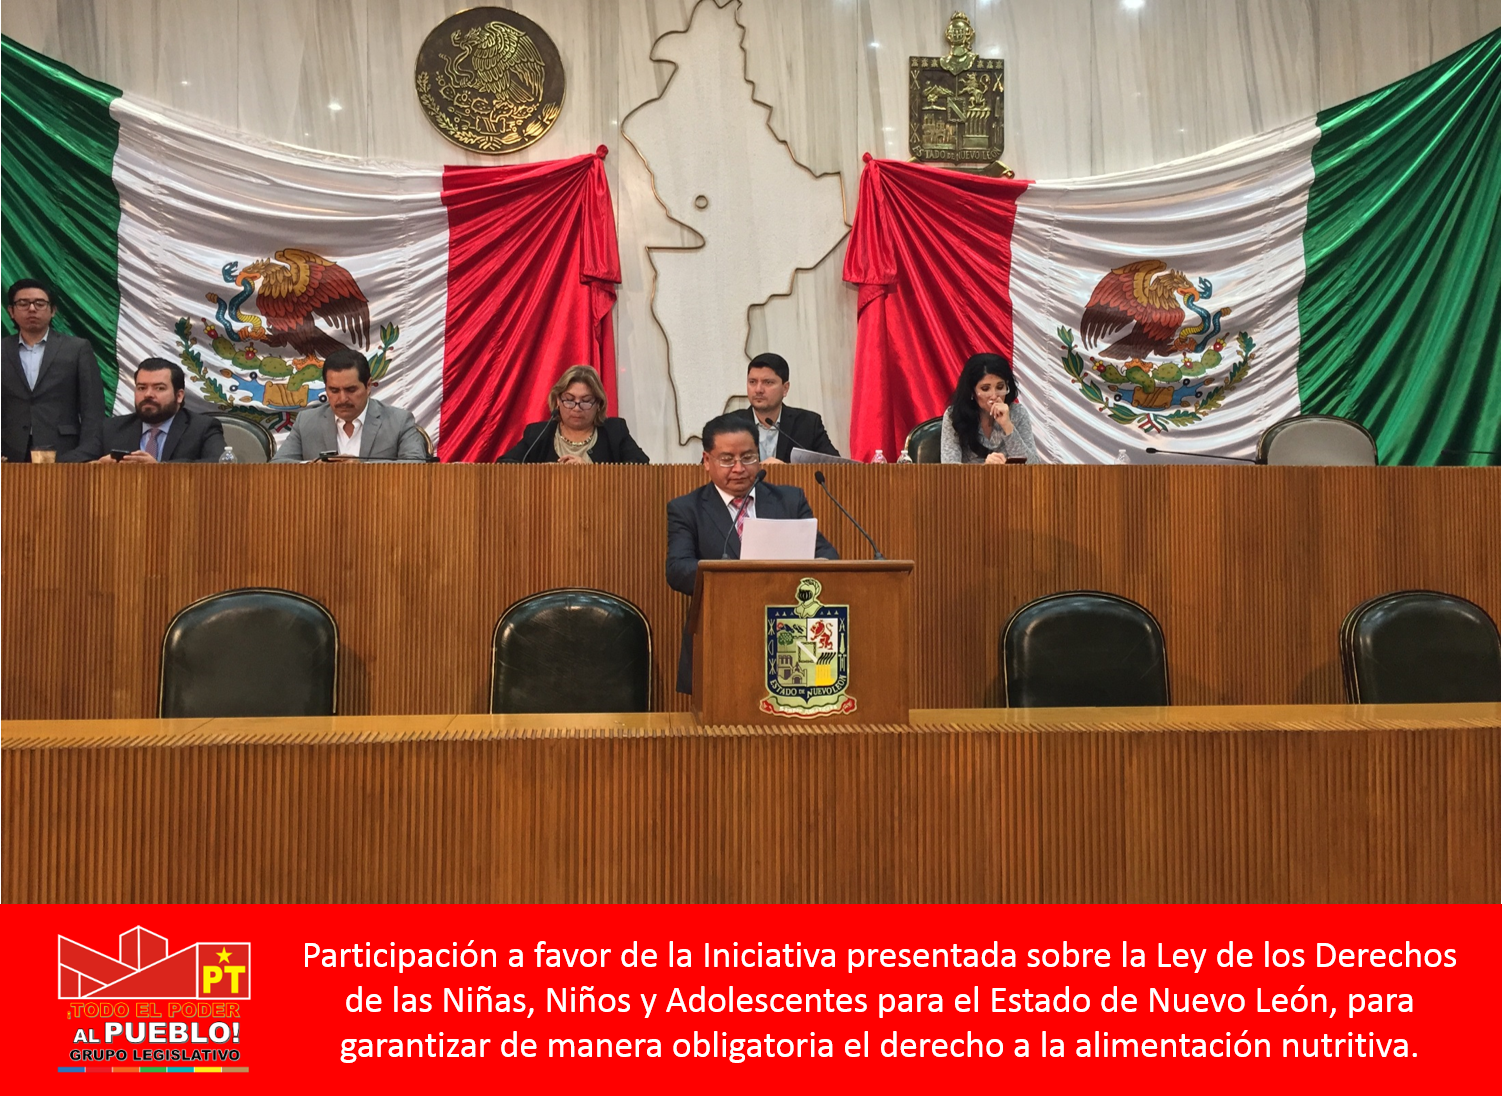 Nos manifestamos a favor de la Iniciativa promovida sobre la Ley de los Derechos de las Niñas, Niños y Adolescentes para el Estado de Nuevo León